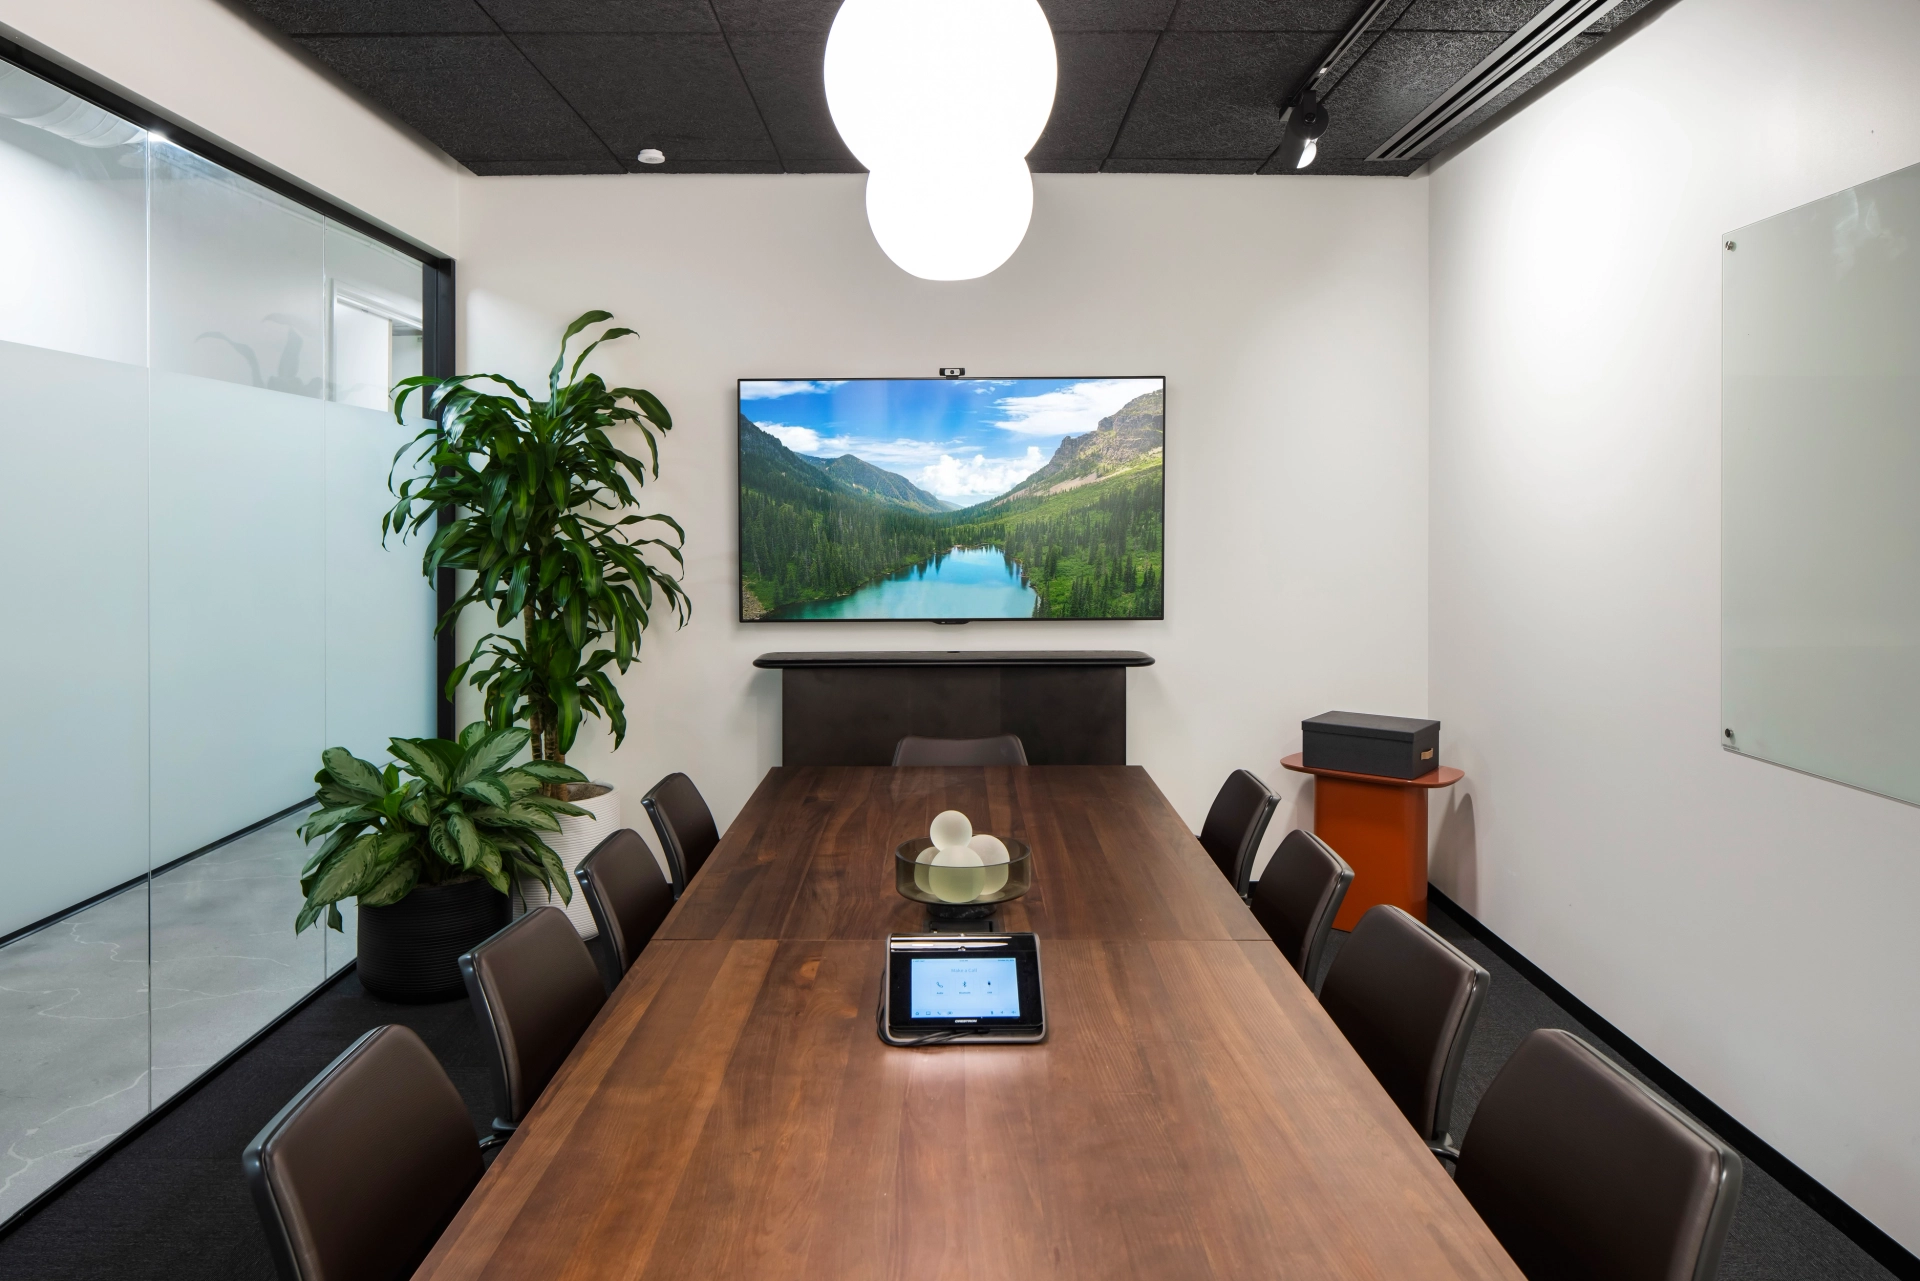 Une salle de réunion dans un bureau ou un espace de coworking avec une télévision au mur.